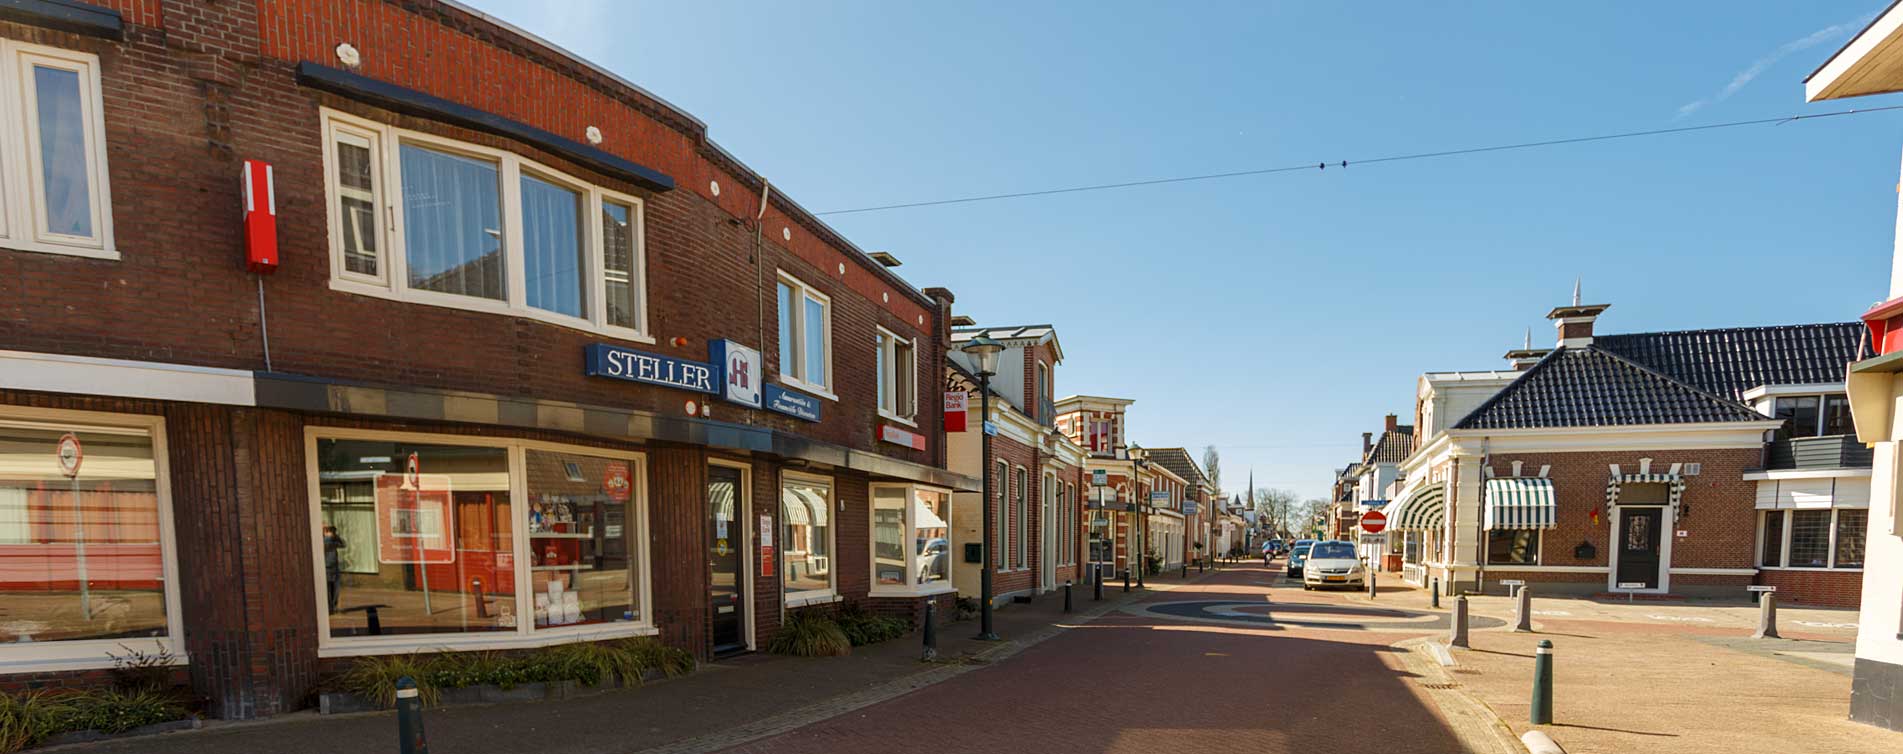 Het kantoor van Steller Assurantien & Financiele Diensten in het centrum van Grijpskerk